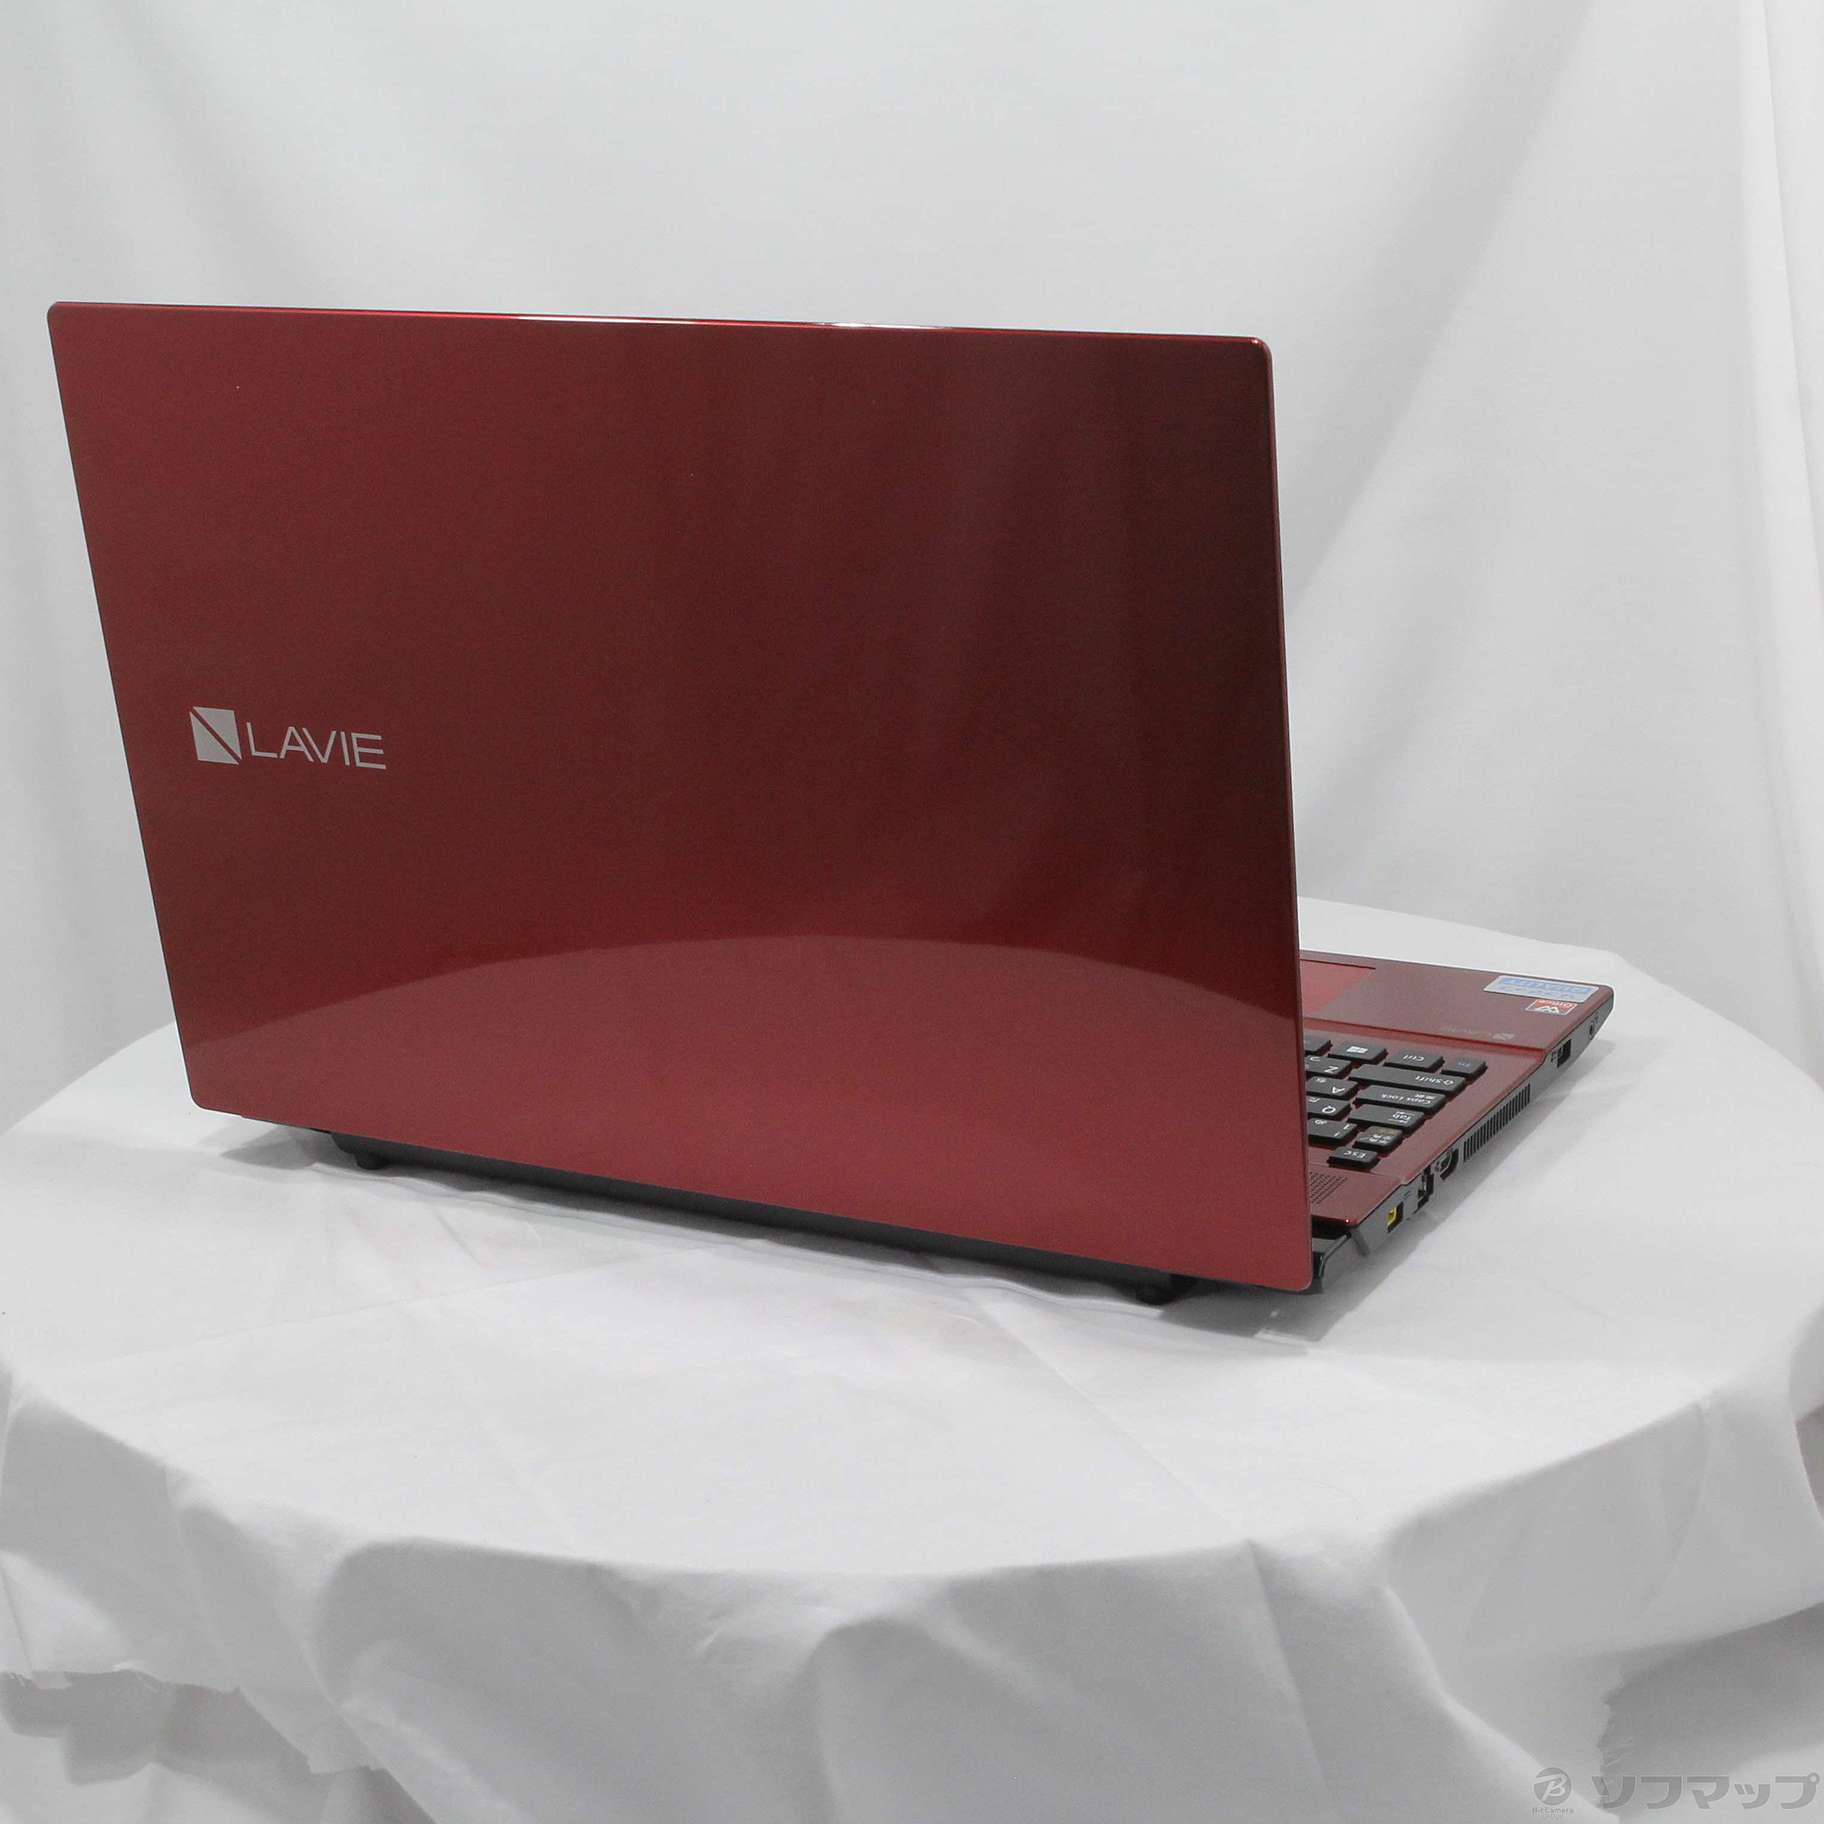 中古】LaVie Note Standard PC-NS700GAR-E3 〔Windows 10〕 ［Core i7